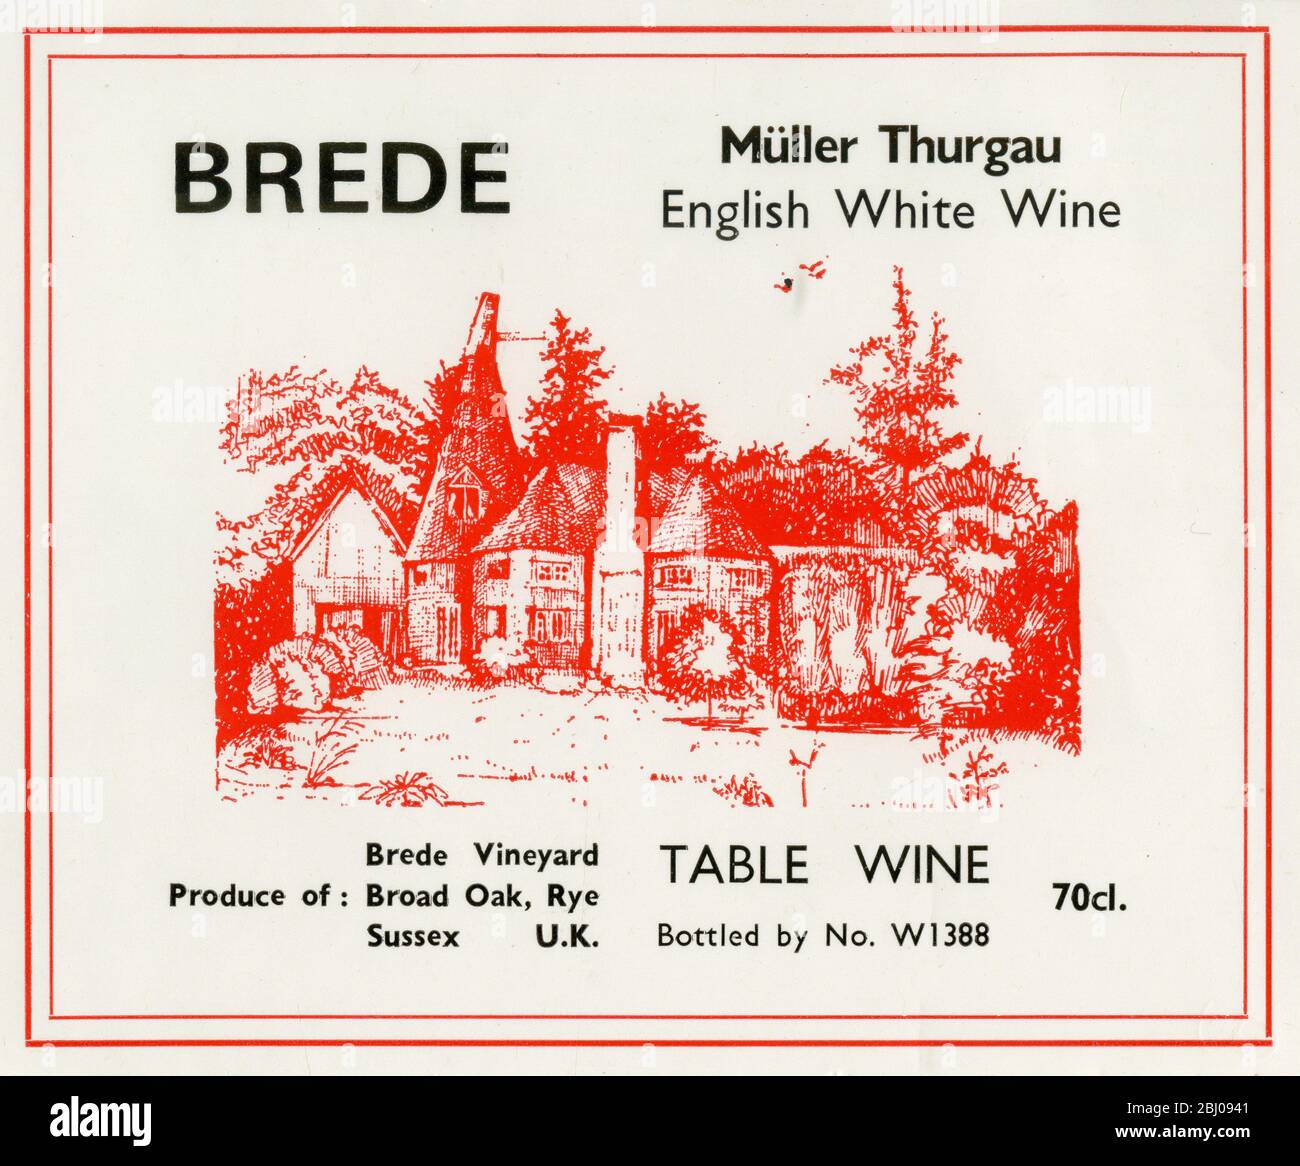 Weinetikett. - Müller Thurgau. Englischer Weißwein. Produkte von Brede Vineyard, Broad Oak, Rye, Sussex UK. Tafelwein. 70 cl. Stockfoto